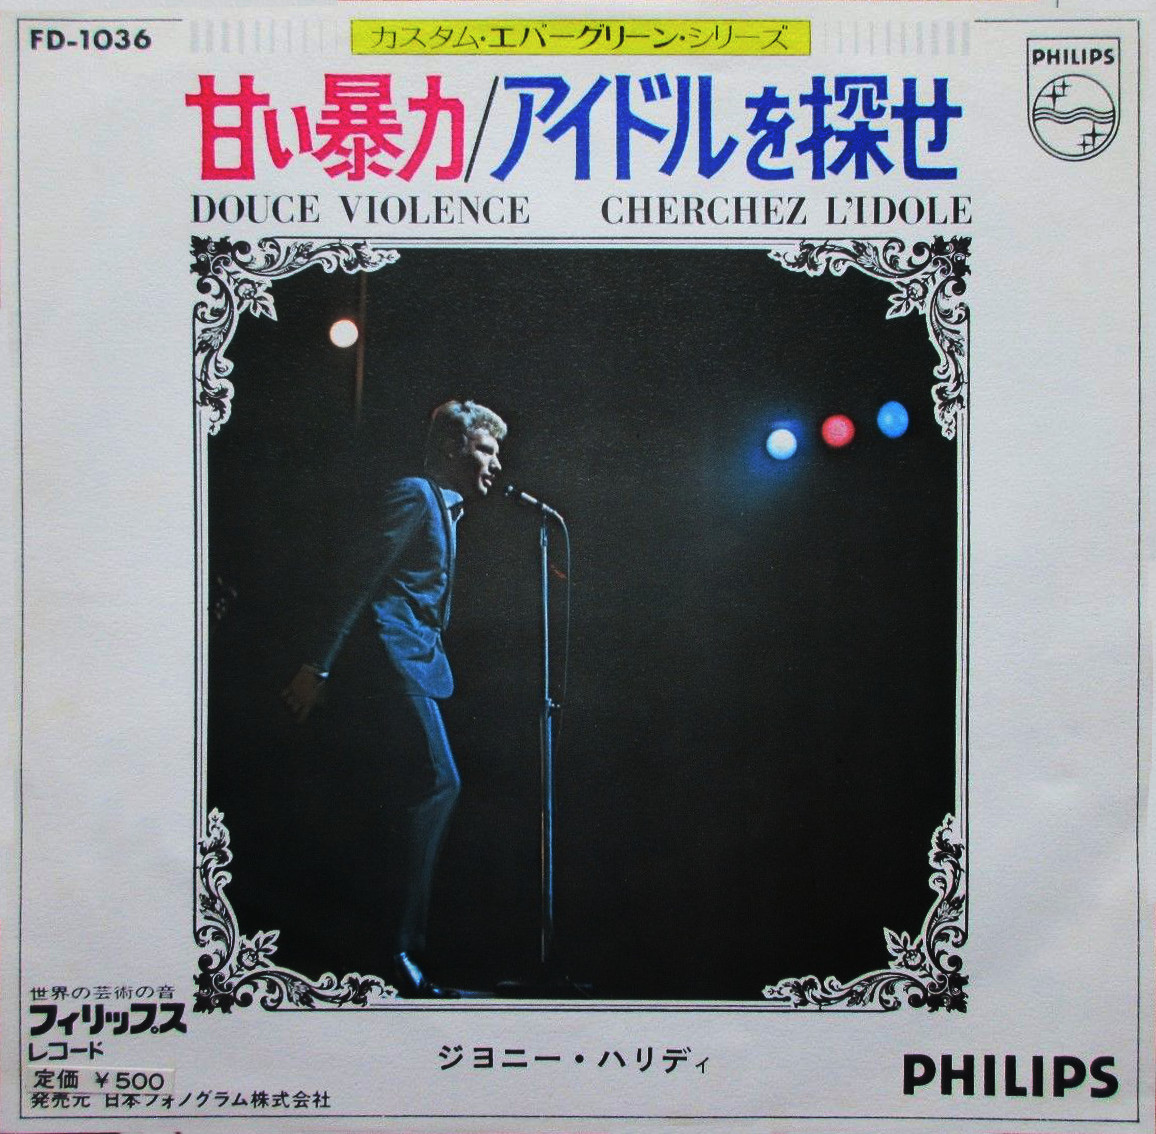 Johnny Hallyday 45prm Japon FD-1036 Douce Violence